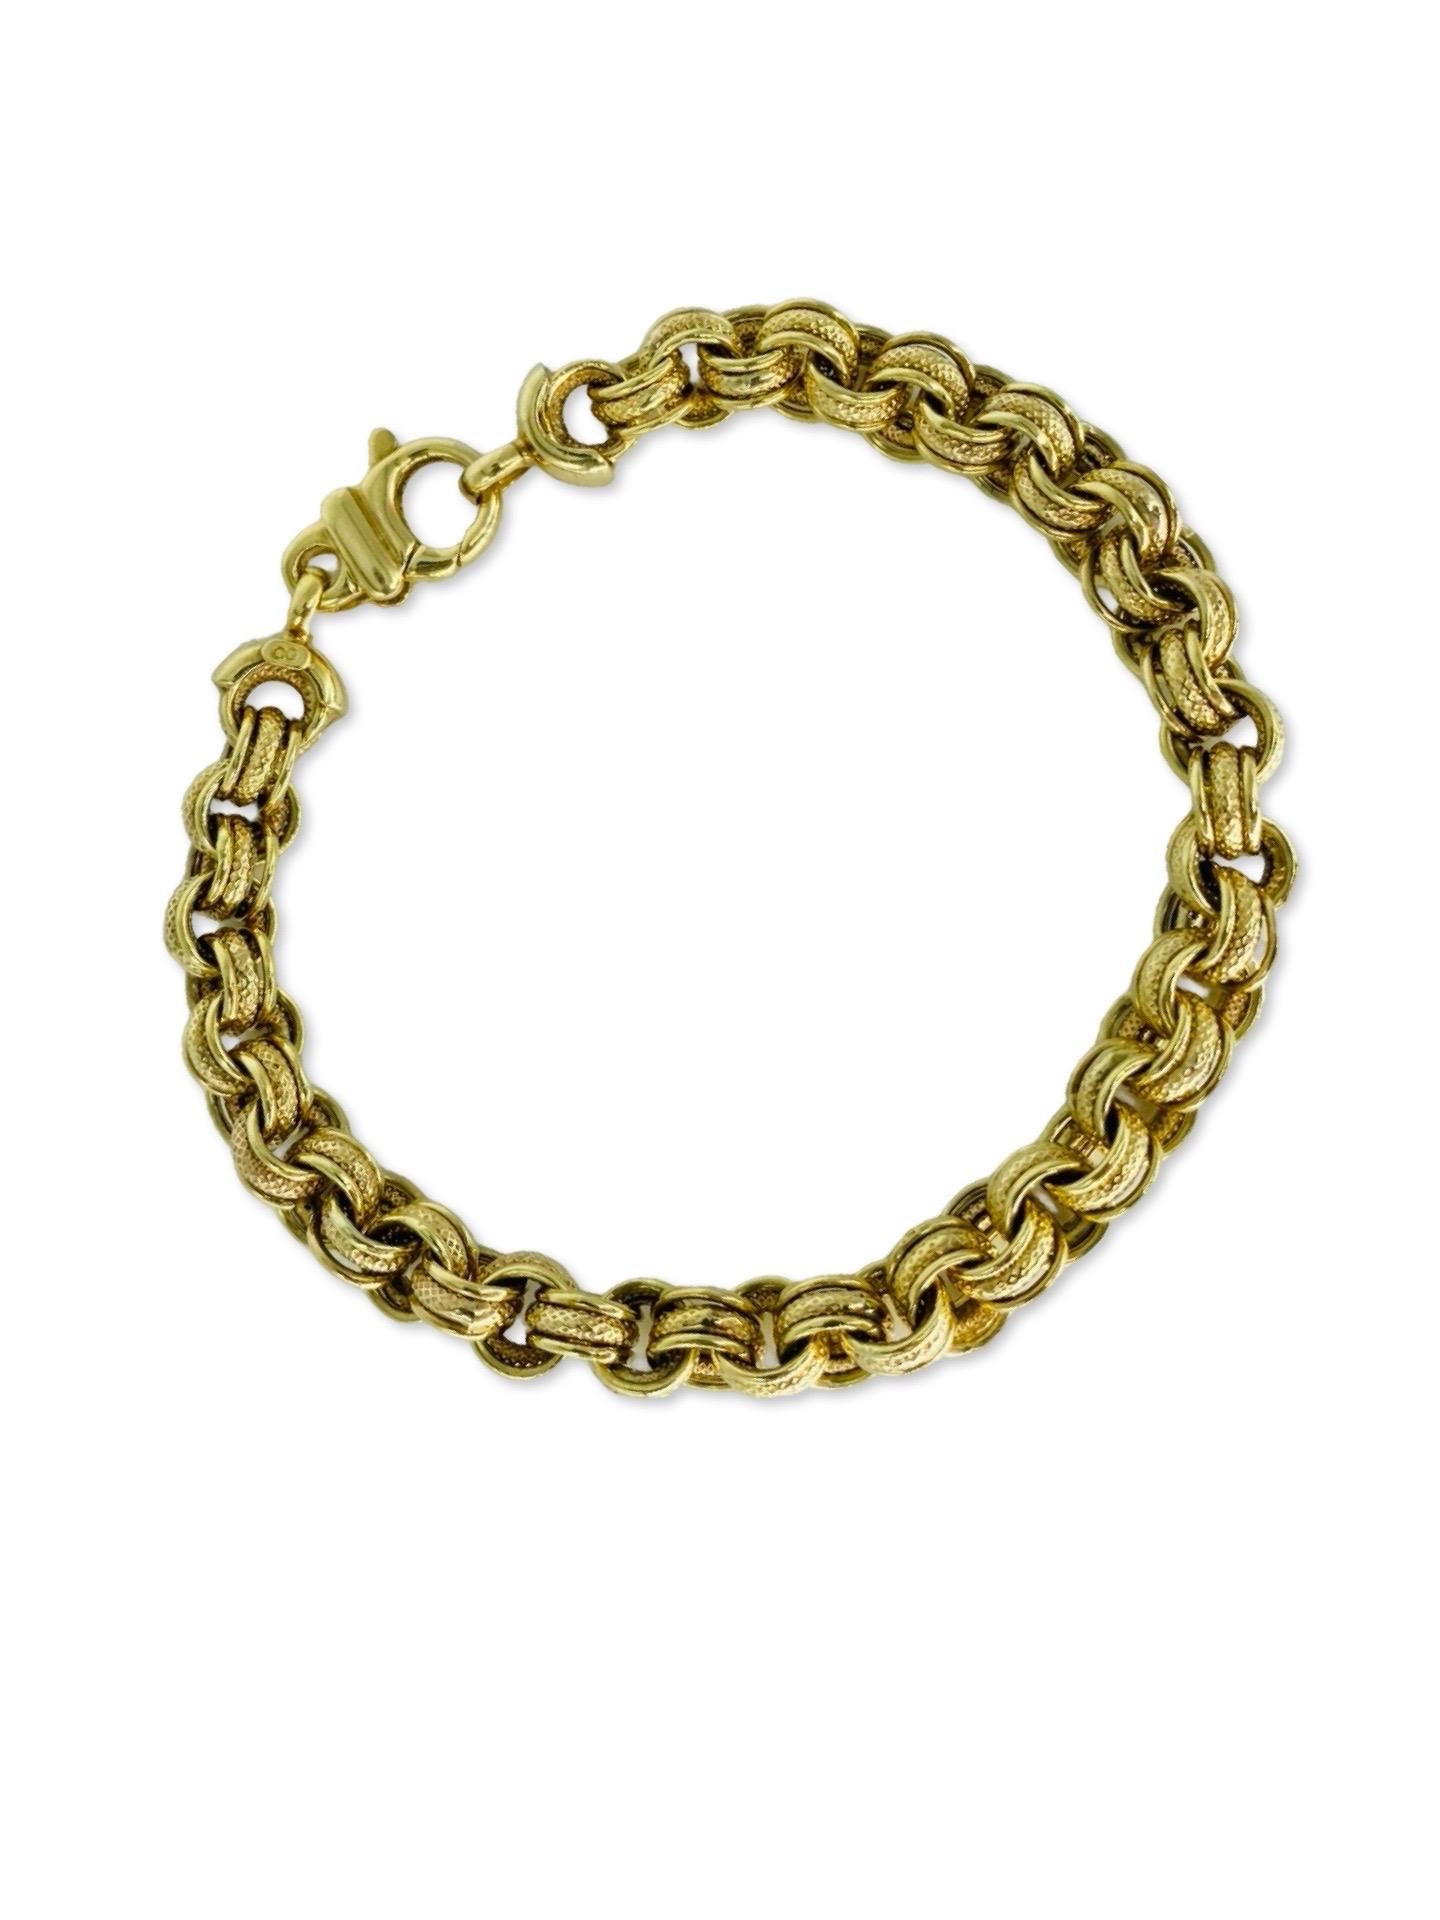 Vintage 6.5mm Fancy Round Link Bracelet. Le bracelet présente un mouvement autour d'un cercle rond de maillons martelés d'or. Le bracelet est réalisé en or 14k et est signé GG pour makers mark. Le bracelet pèse 11,6 g et mesure 7 pouces de long.